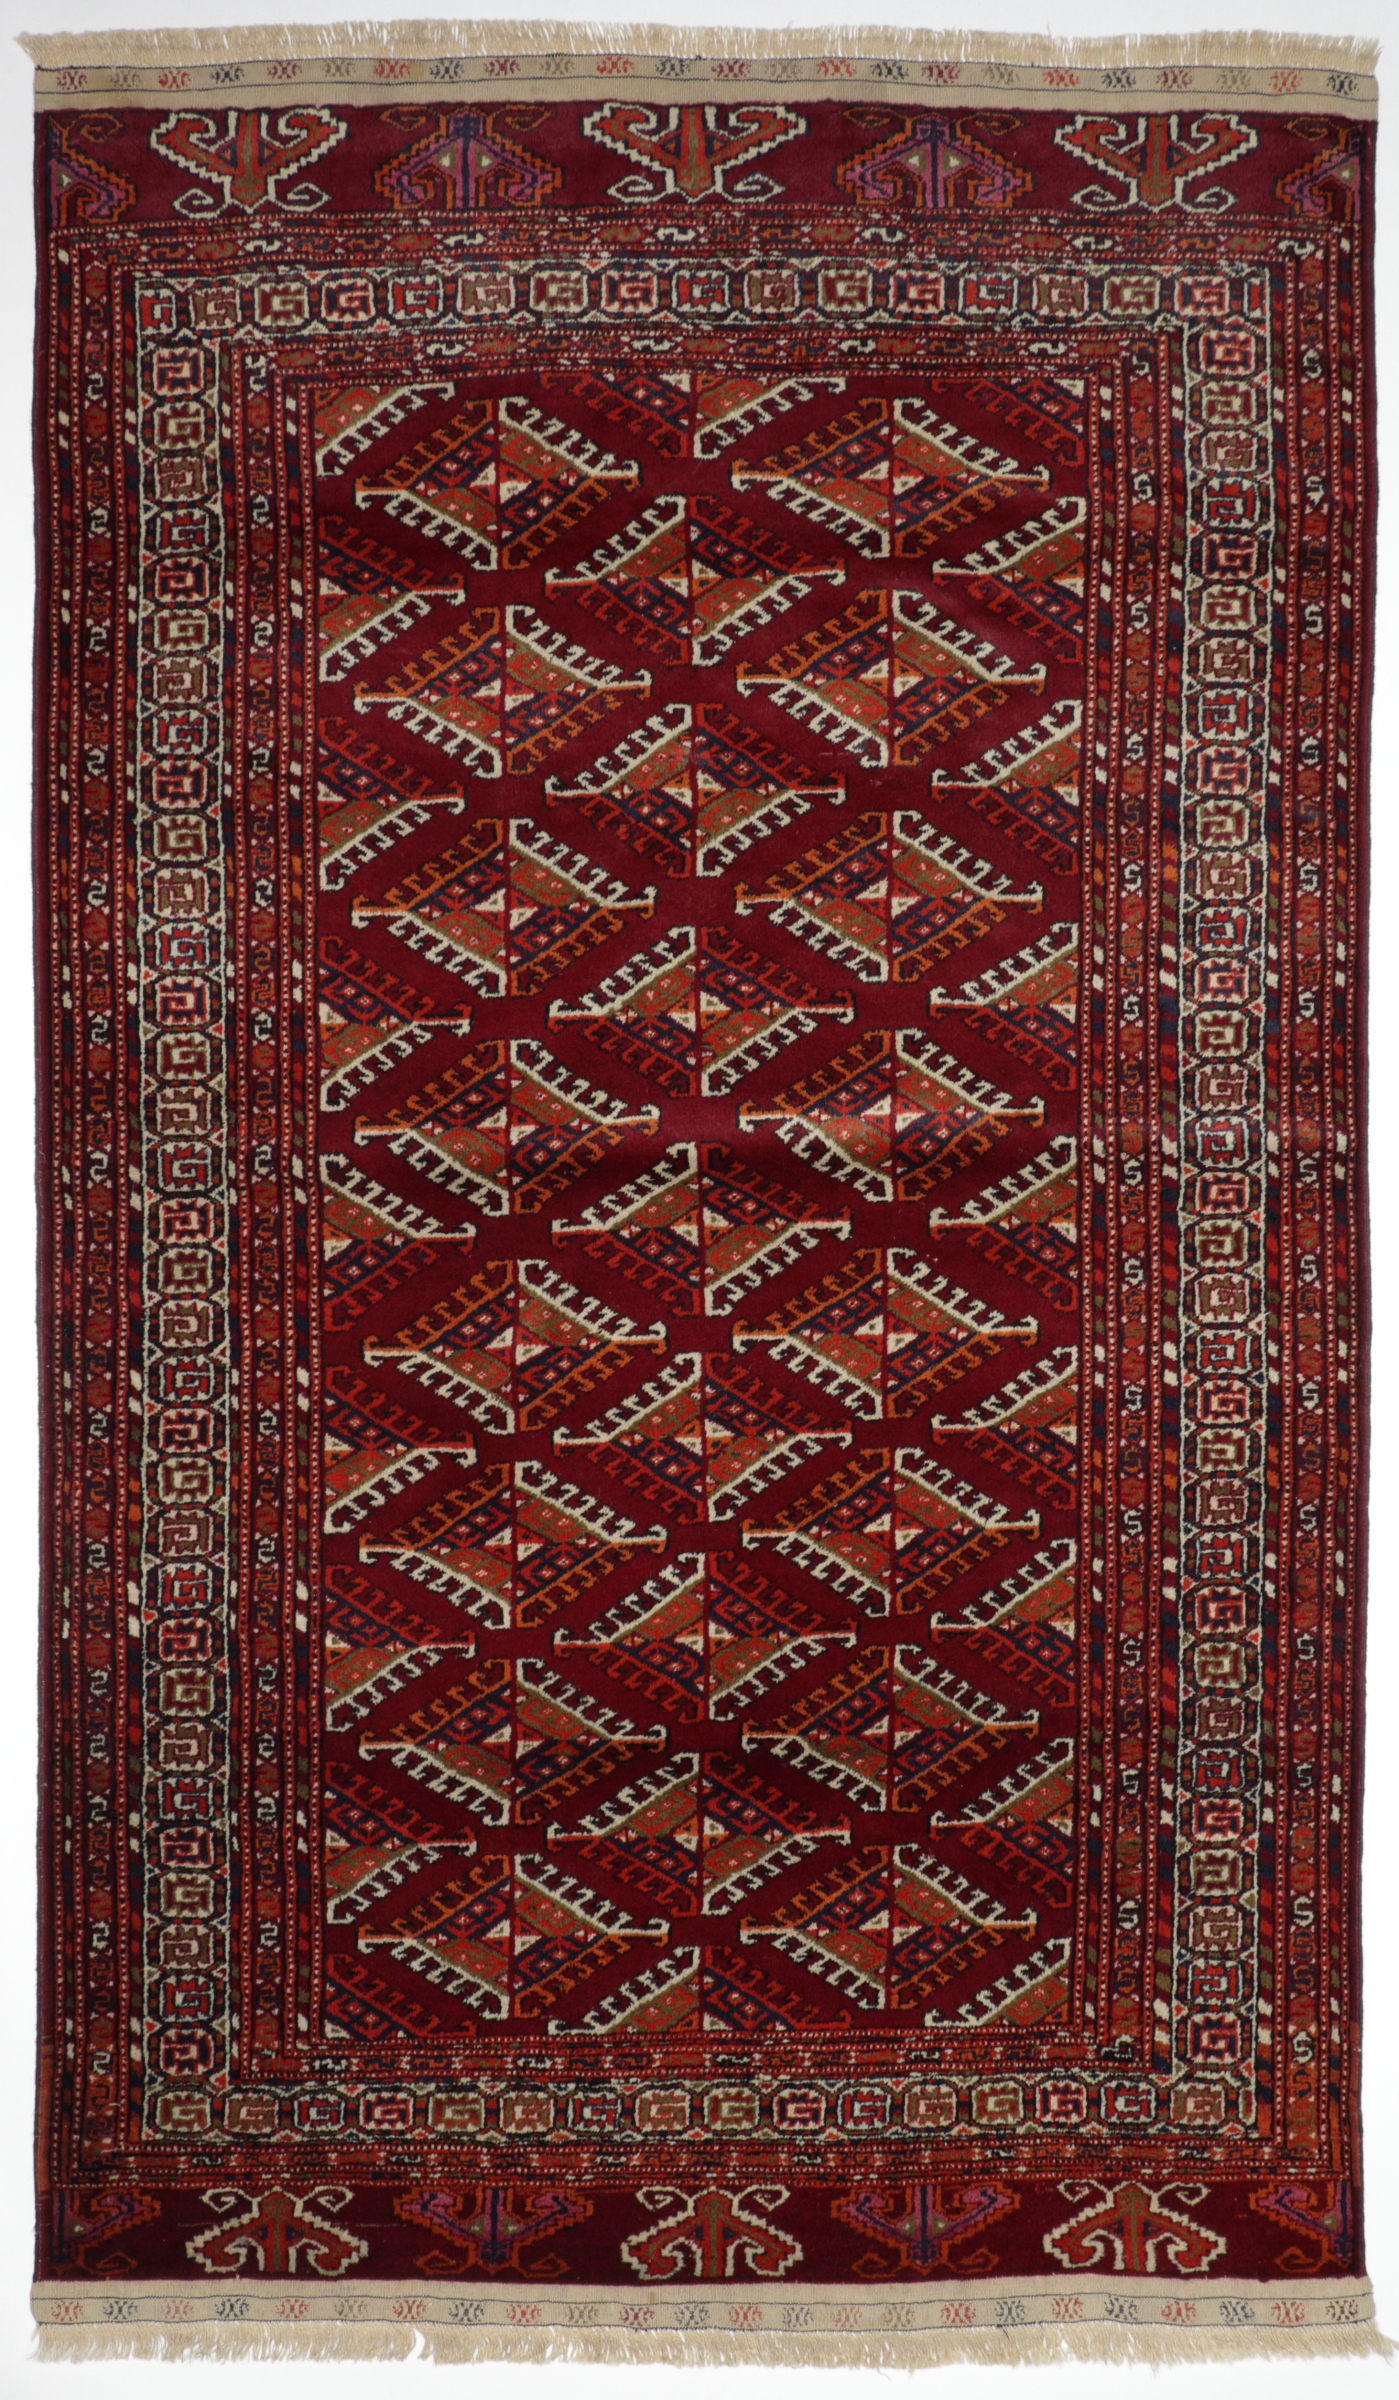 Russischer Yomut, handgeknüpft aus Schurwolle, reichliche Ornamentierung des Mittelfeldes und der Bordüre, rotgrundig/weiß/mehrfarbig